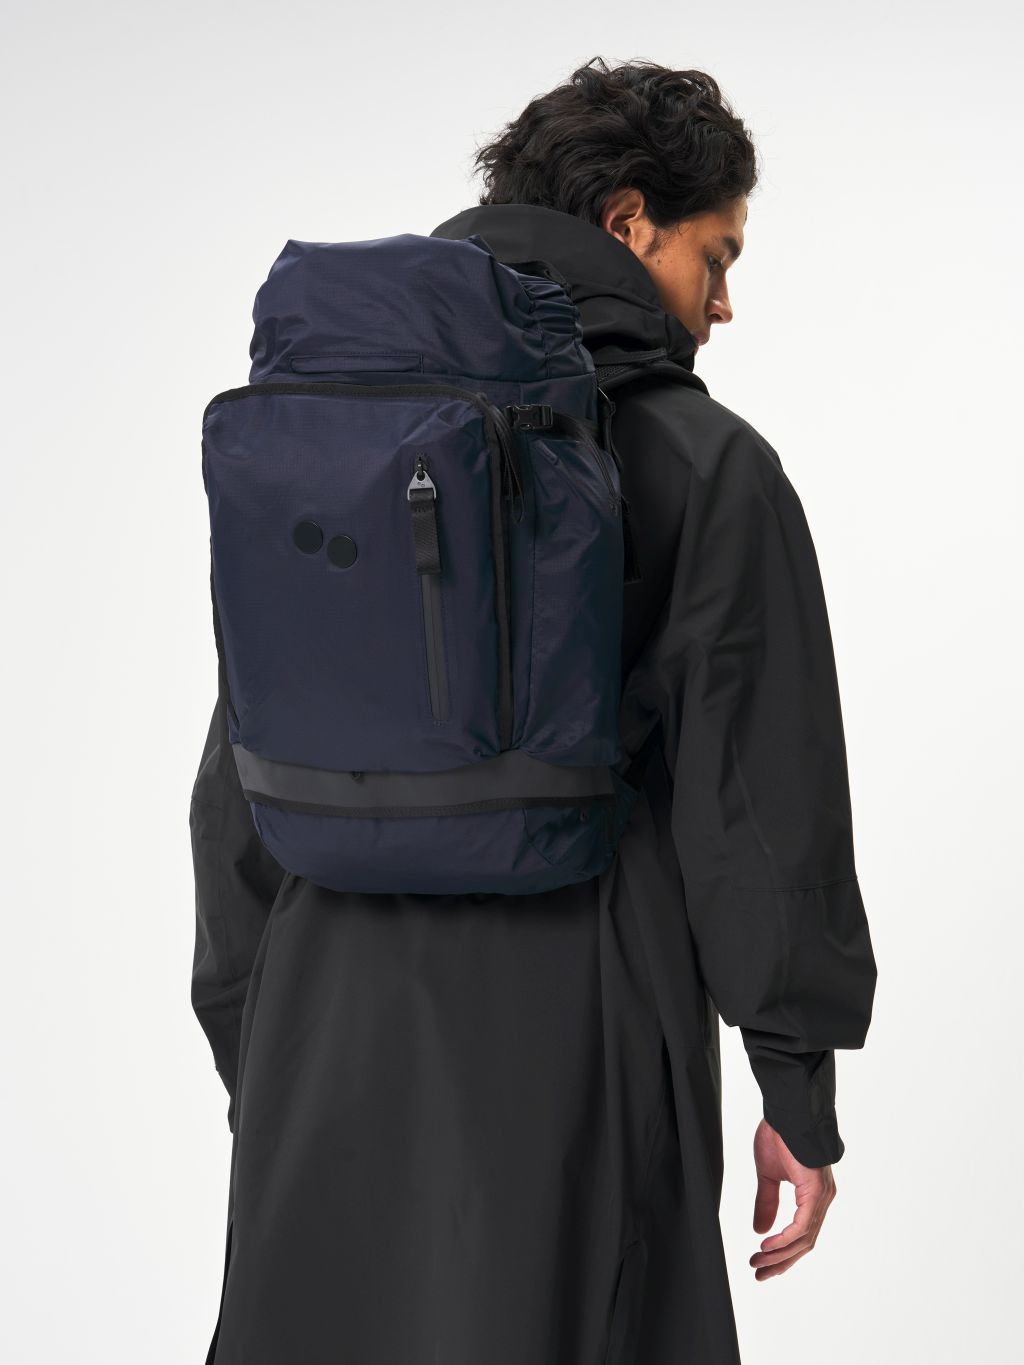 Komut Medium Backpack Pure Navy